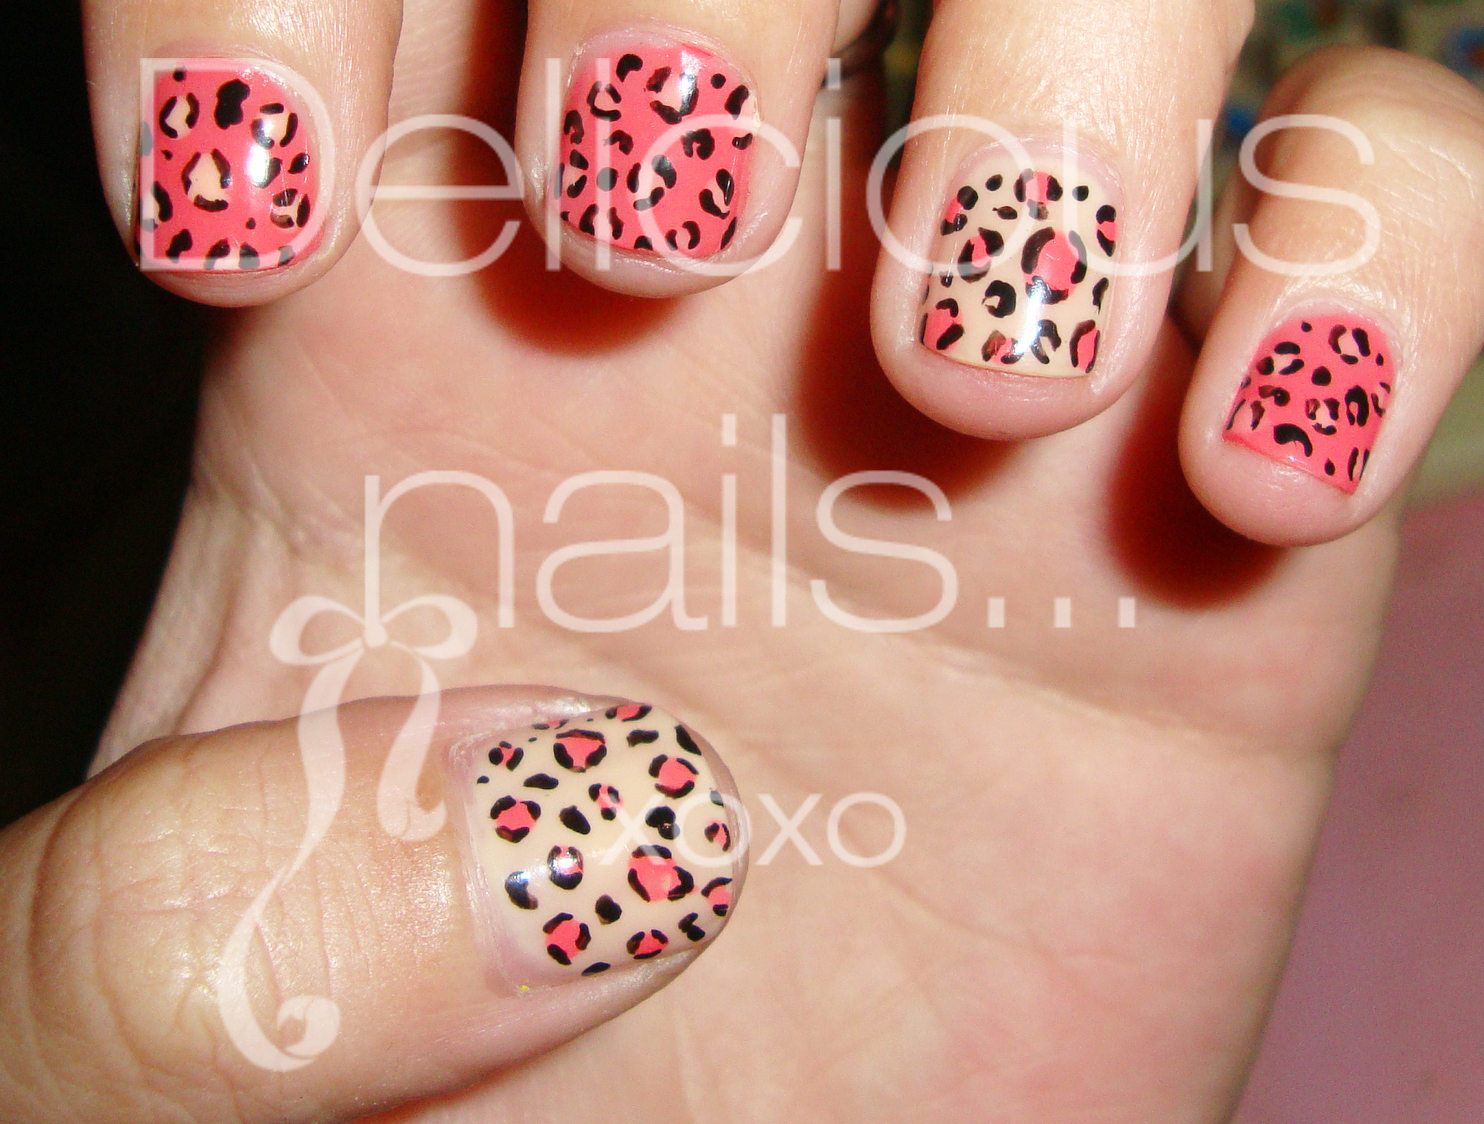 Delicious Nails...